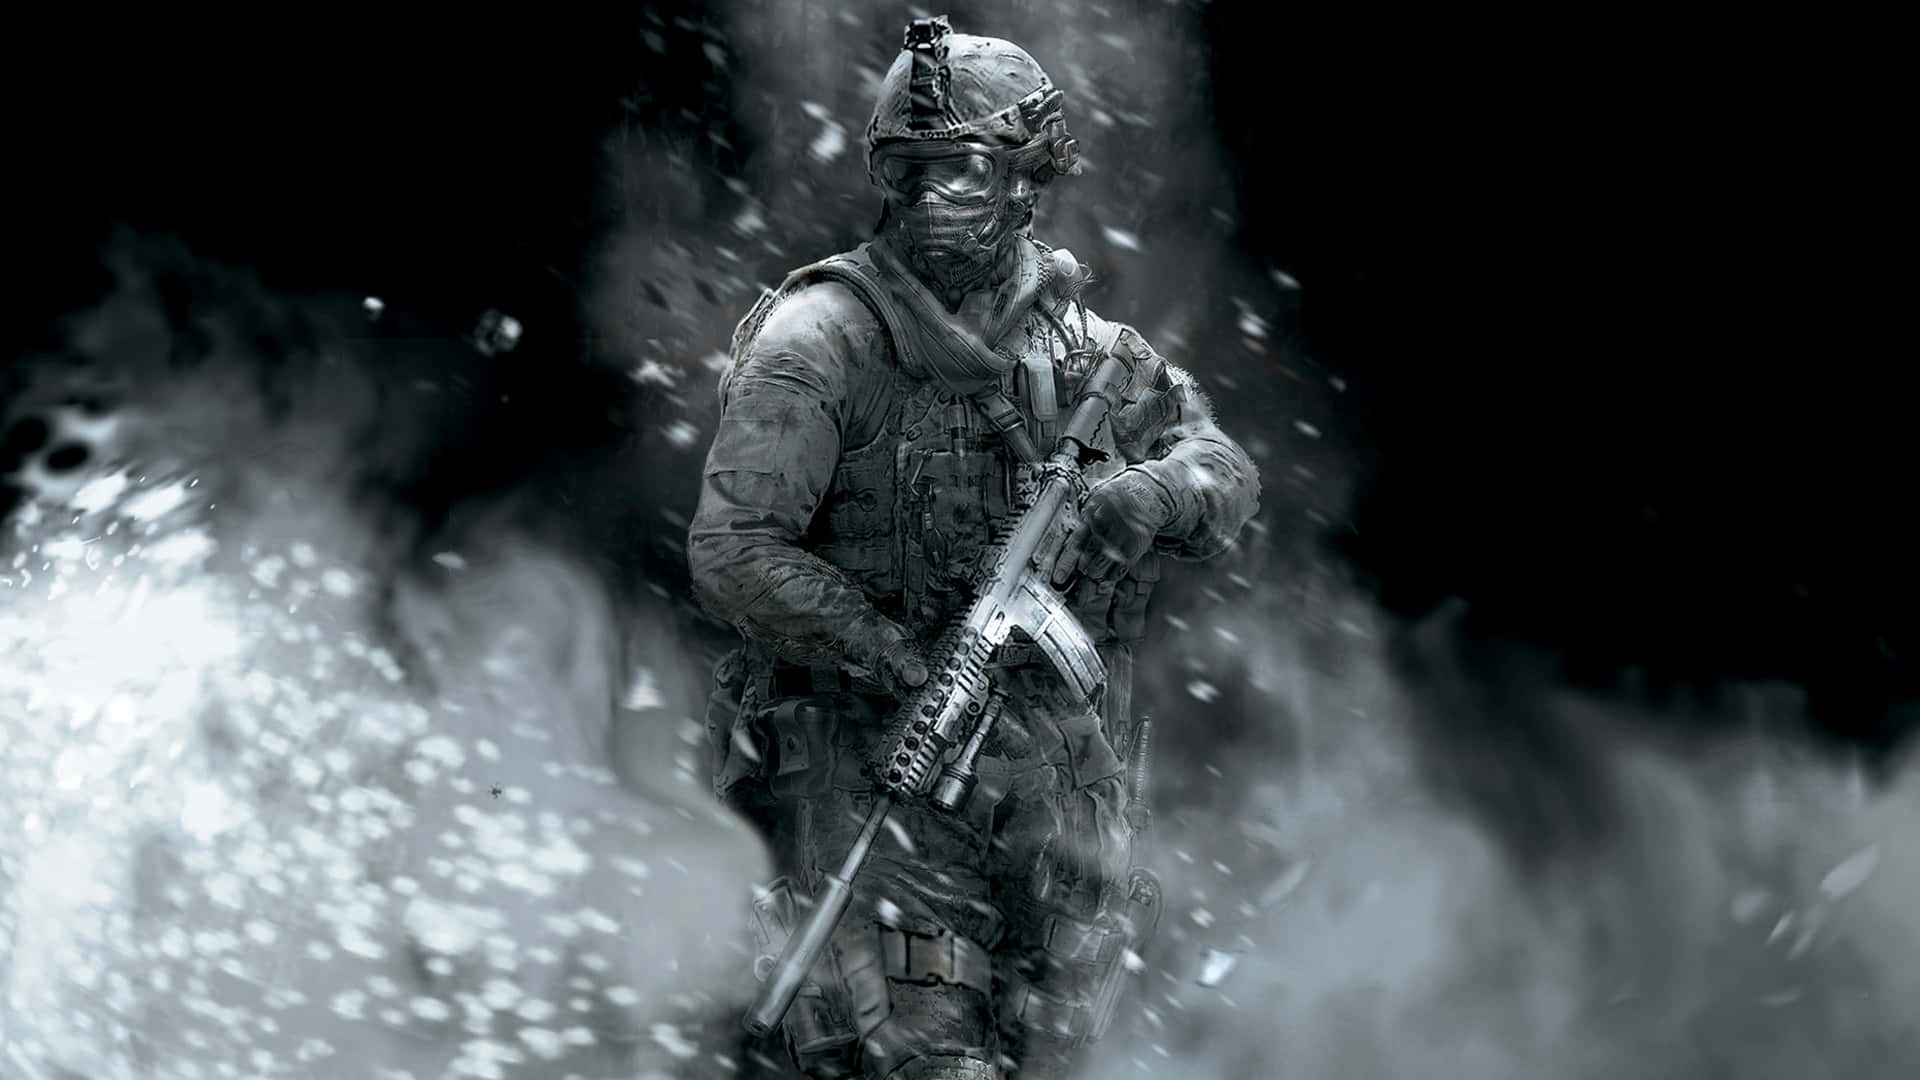 Oplev adrenalinen fra episk kampe i Call of Duty med denne tapet. Wallpaper